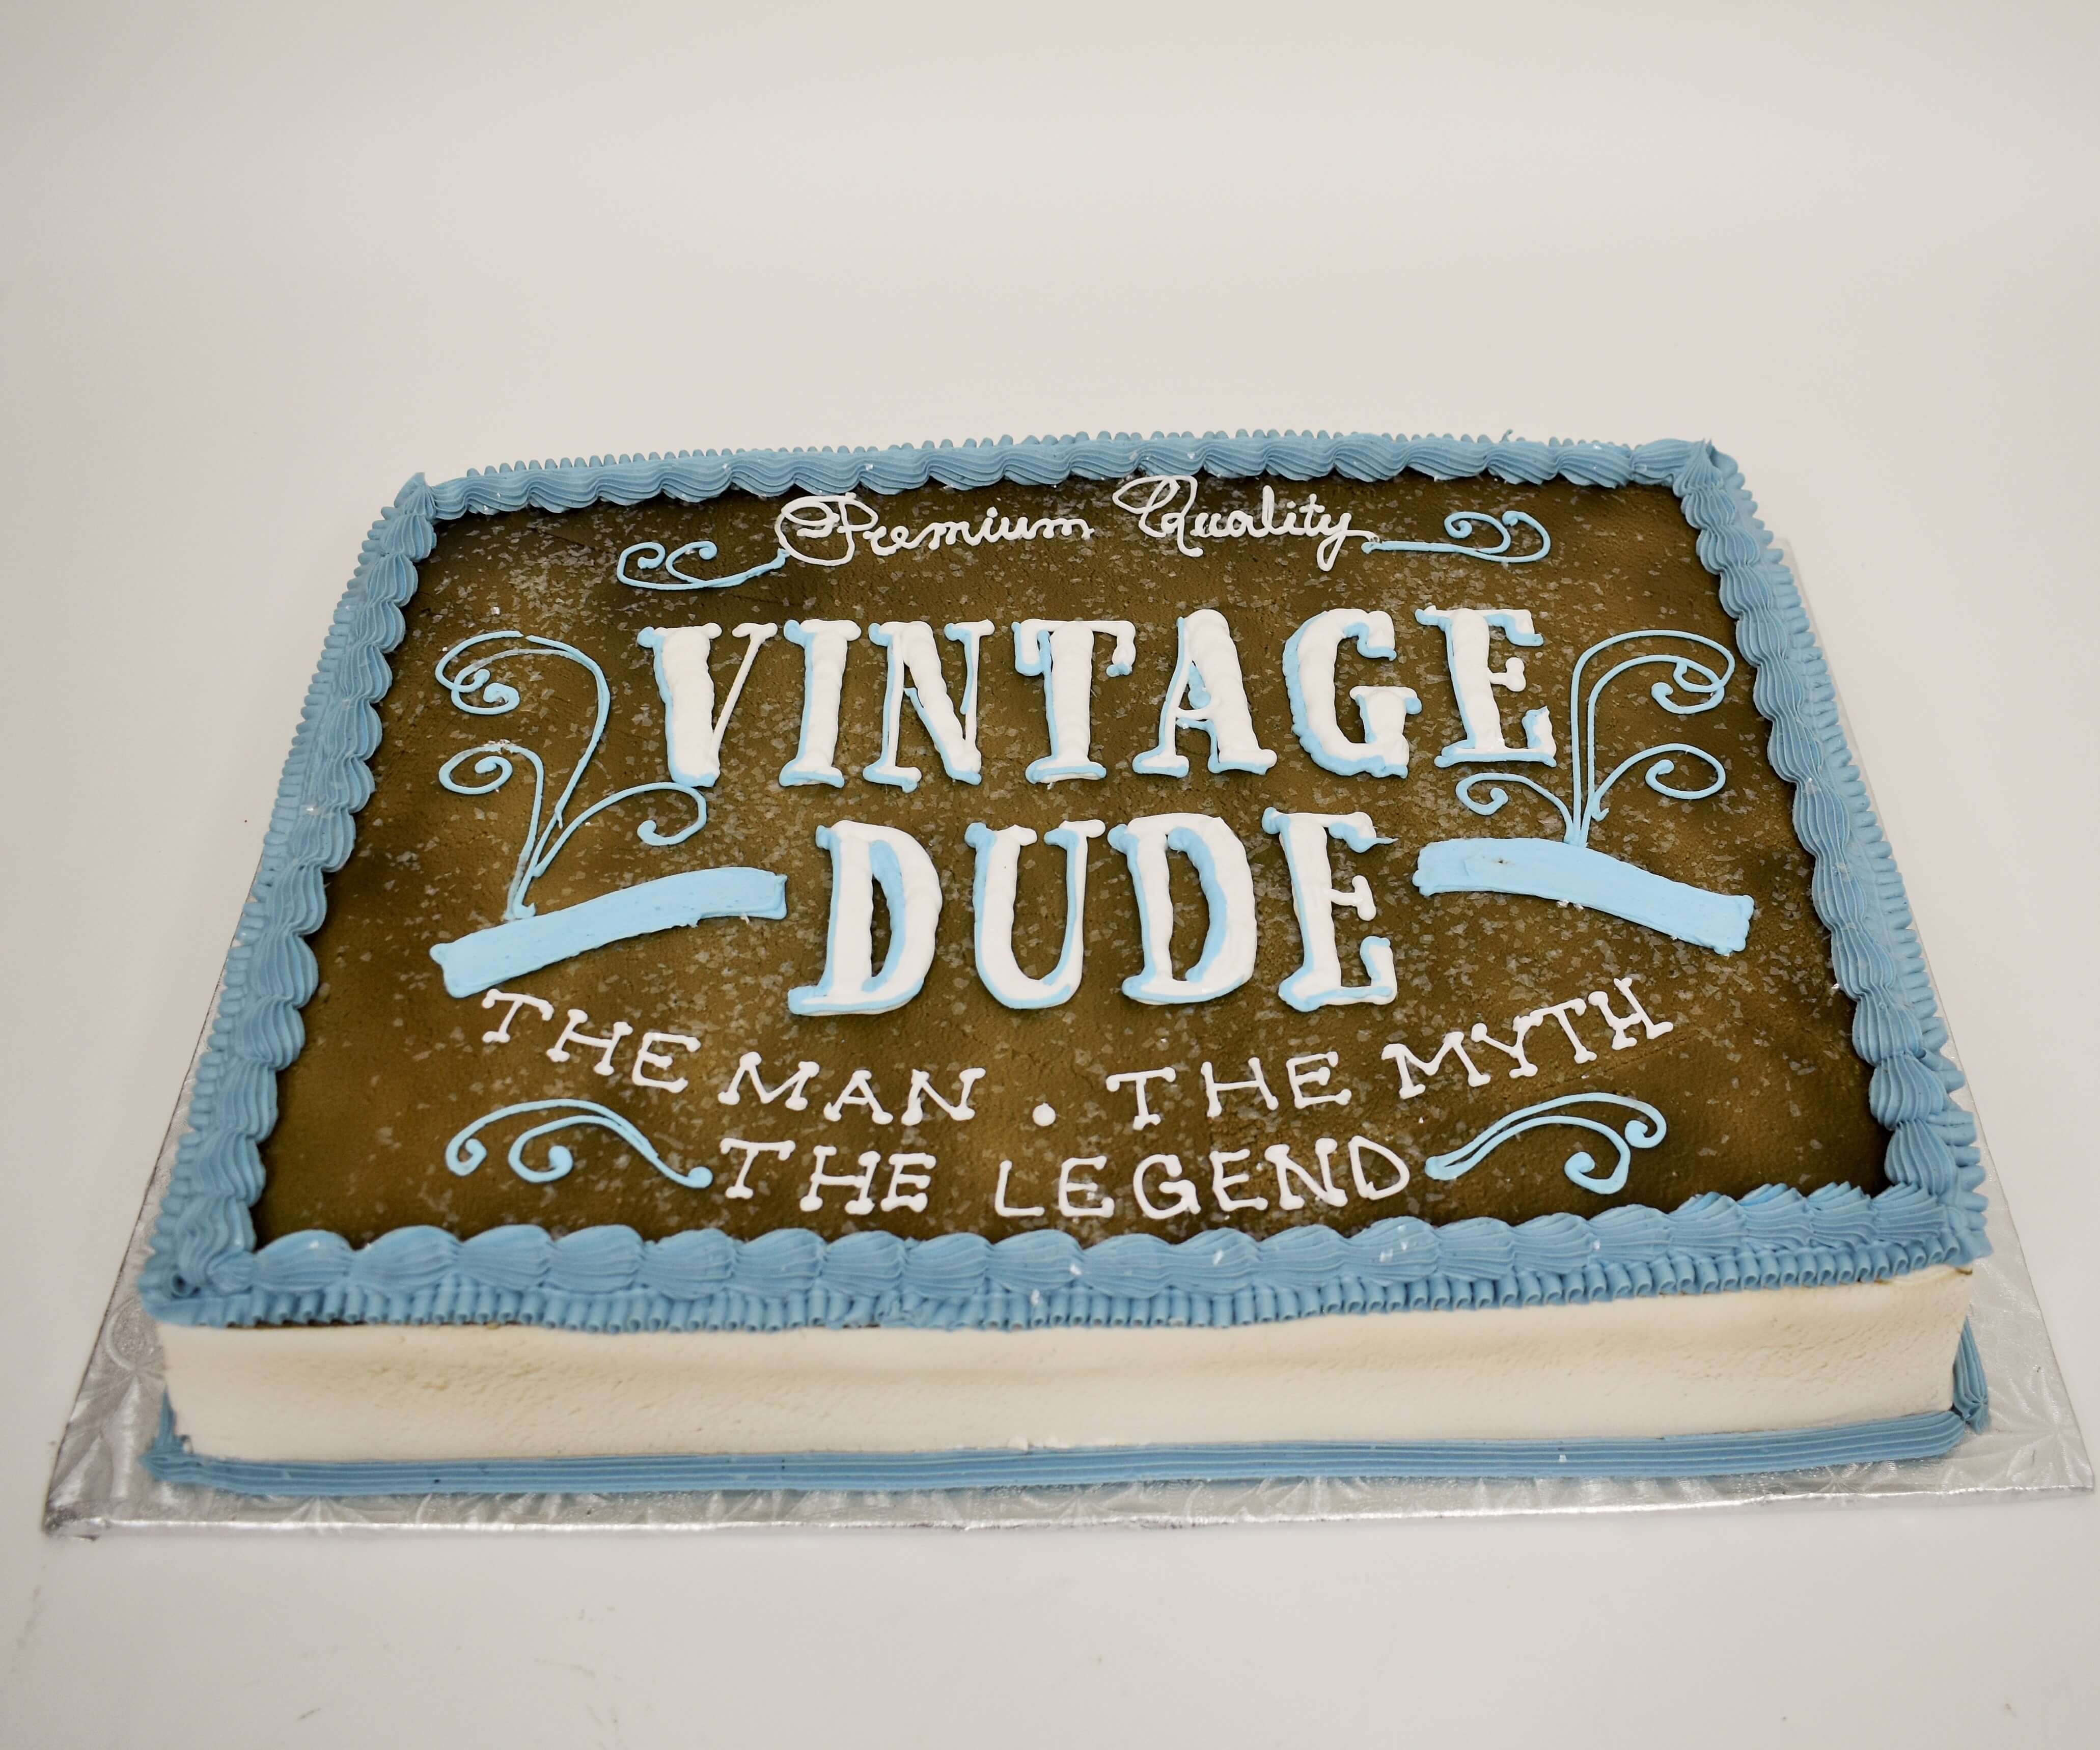 McArthur's Bakery Custom Cake With The Man, The Myth, The Legend Slogan